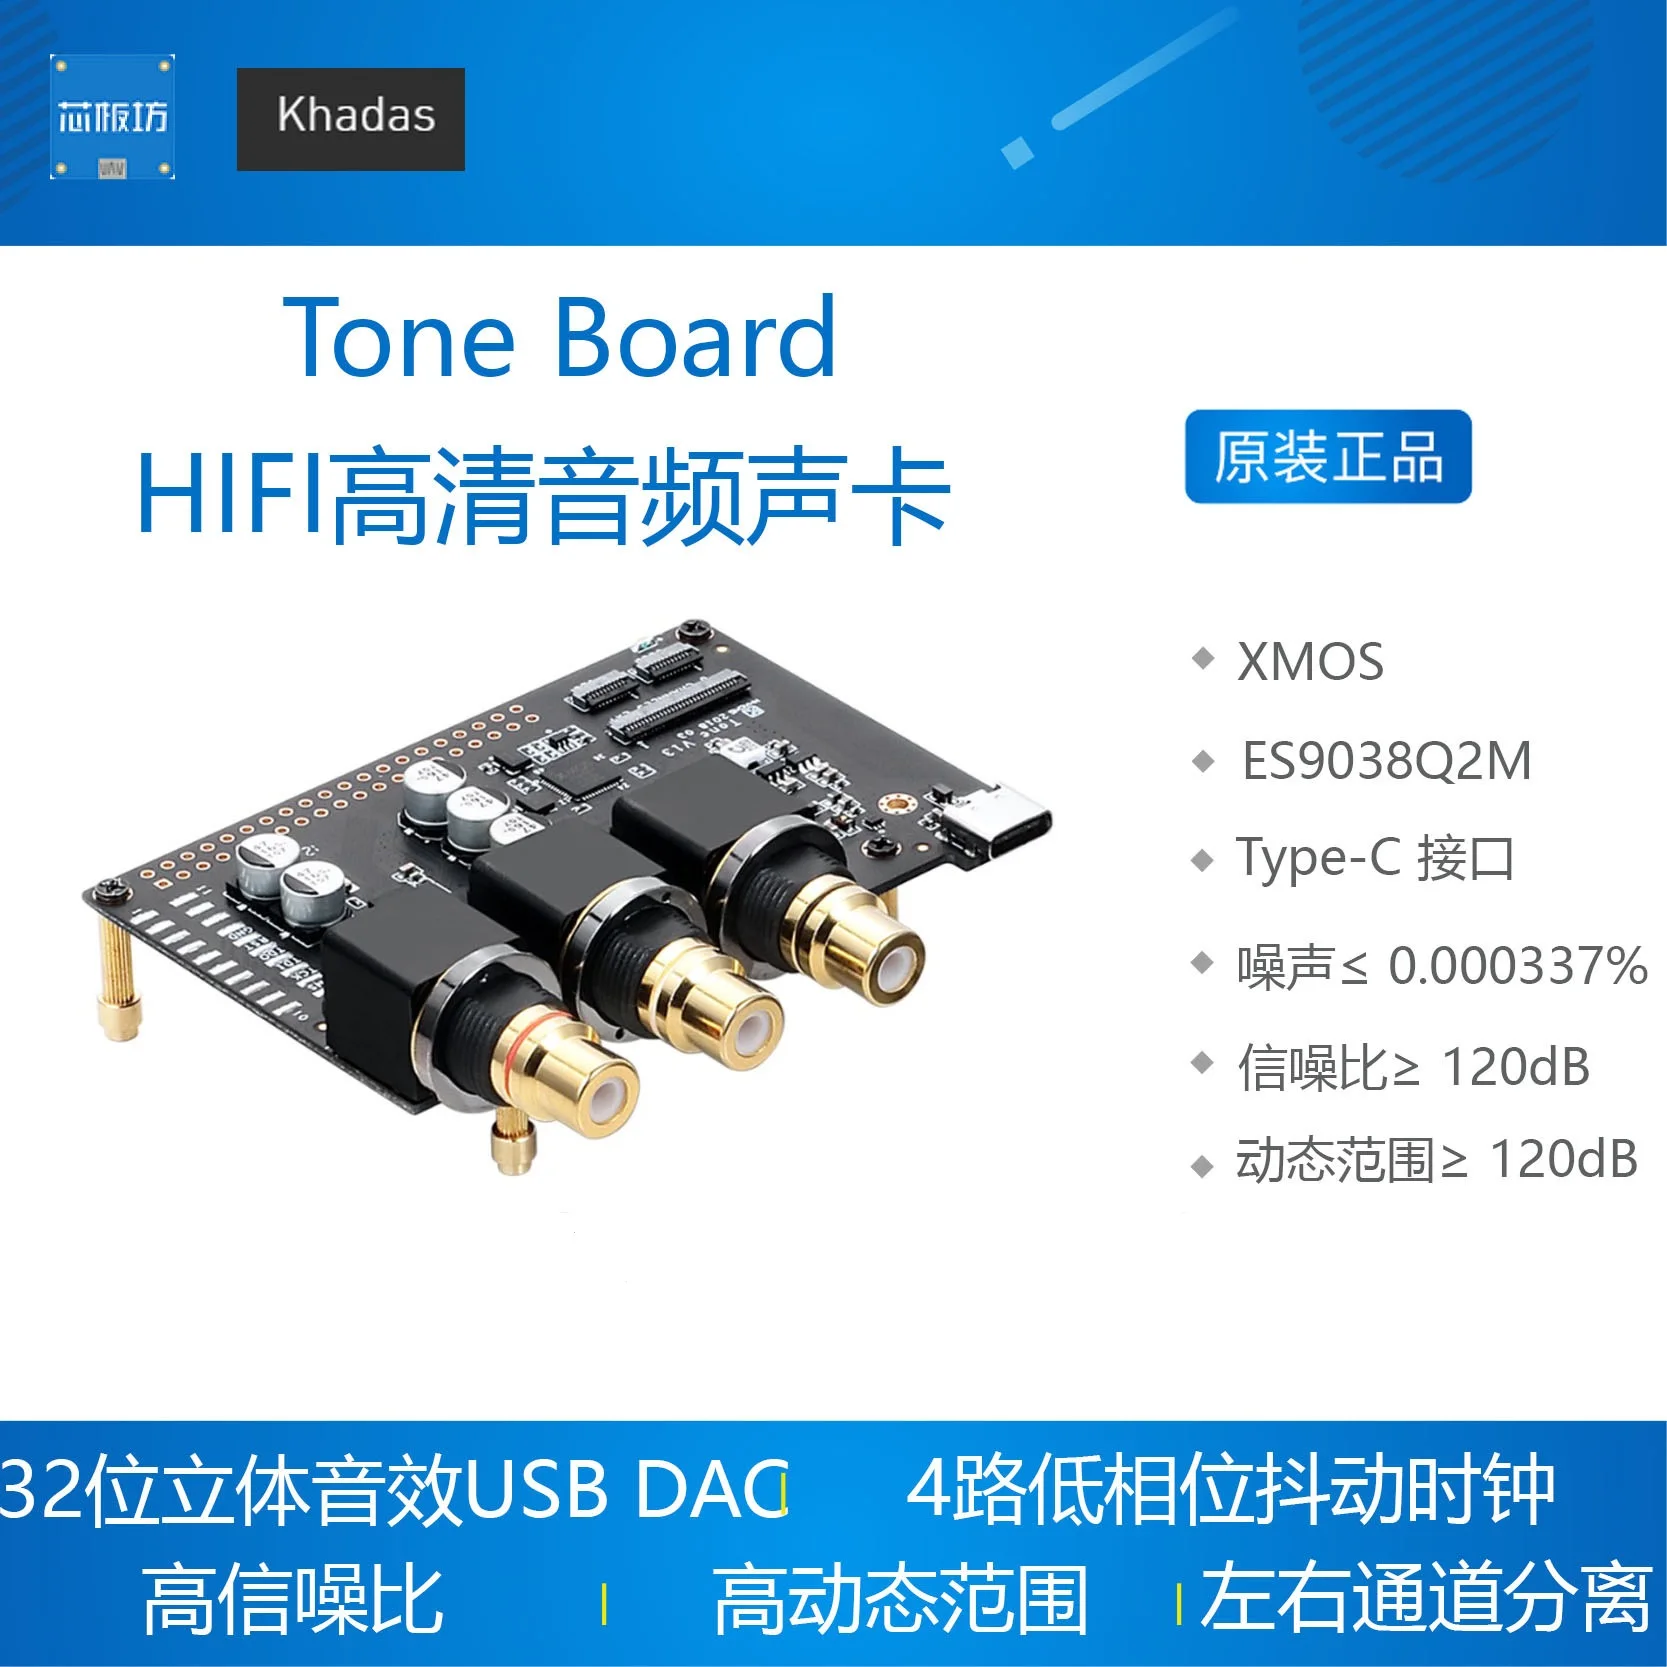 

Khadas Tone Board ES9038Q2M USB DAC Hi-Res Audio Development Board with XMOS XU208-128-QF48